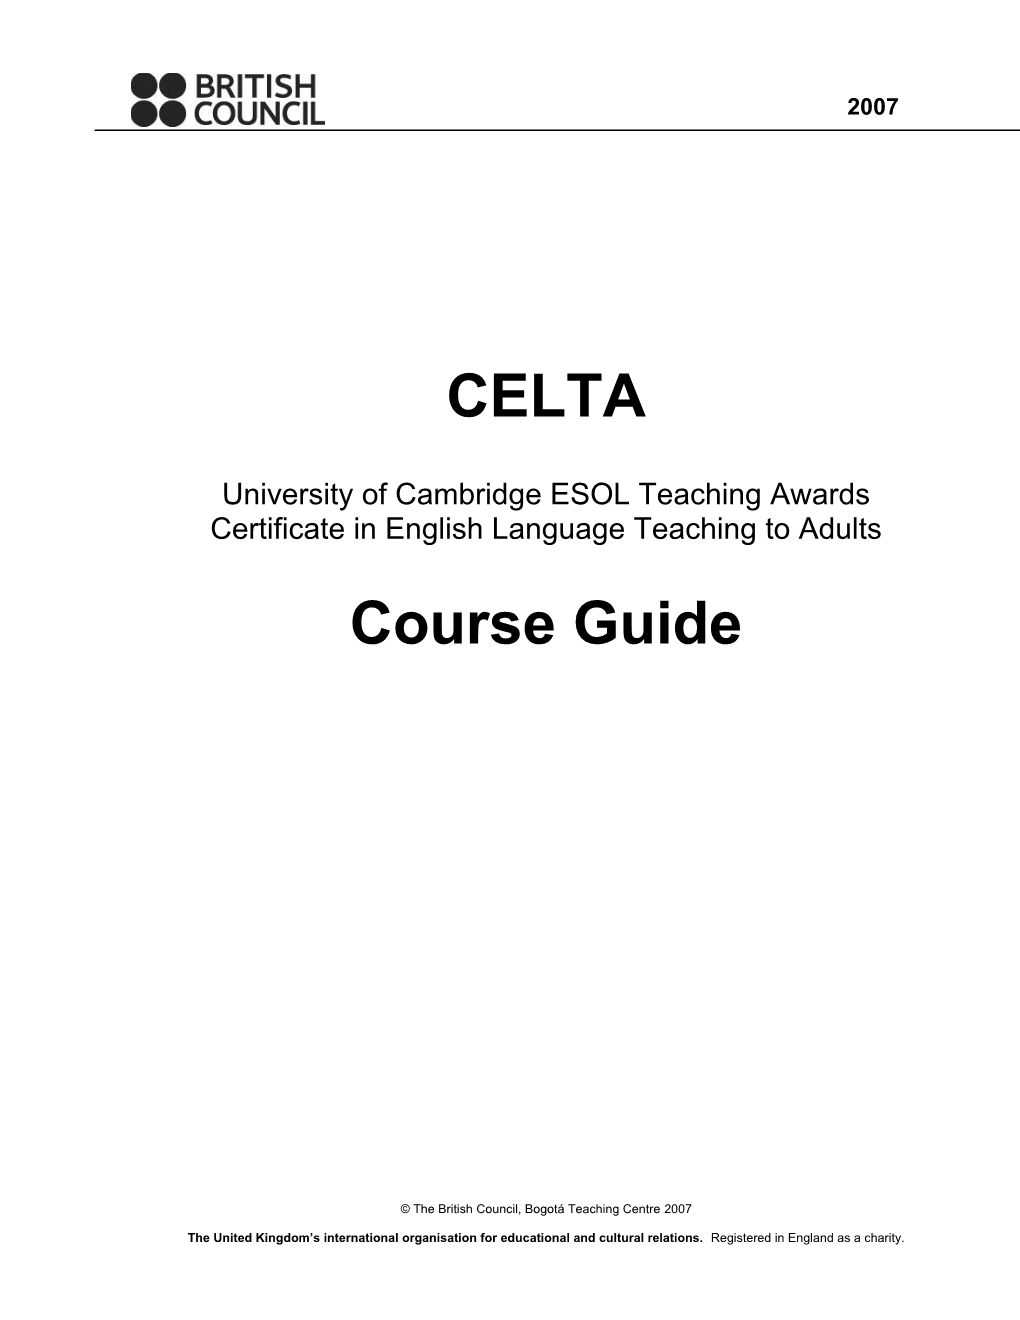 British Council, Bogotá CELTA Course Guide